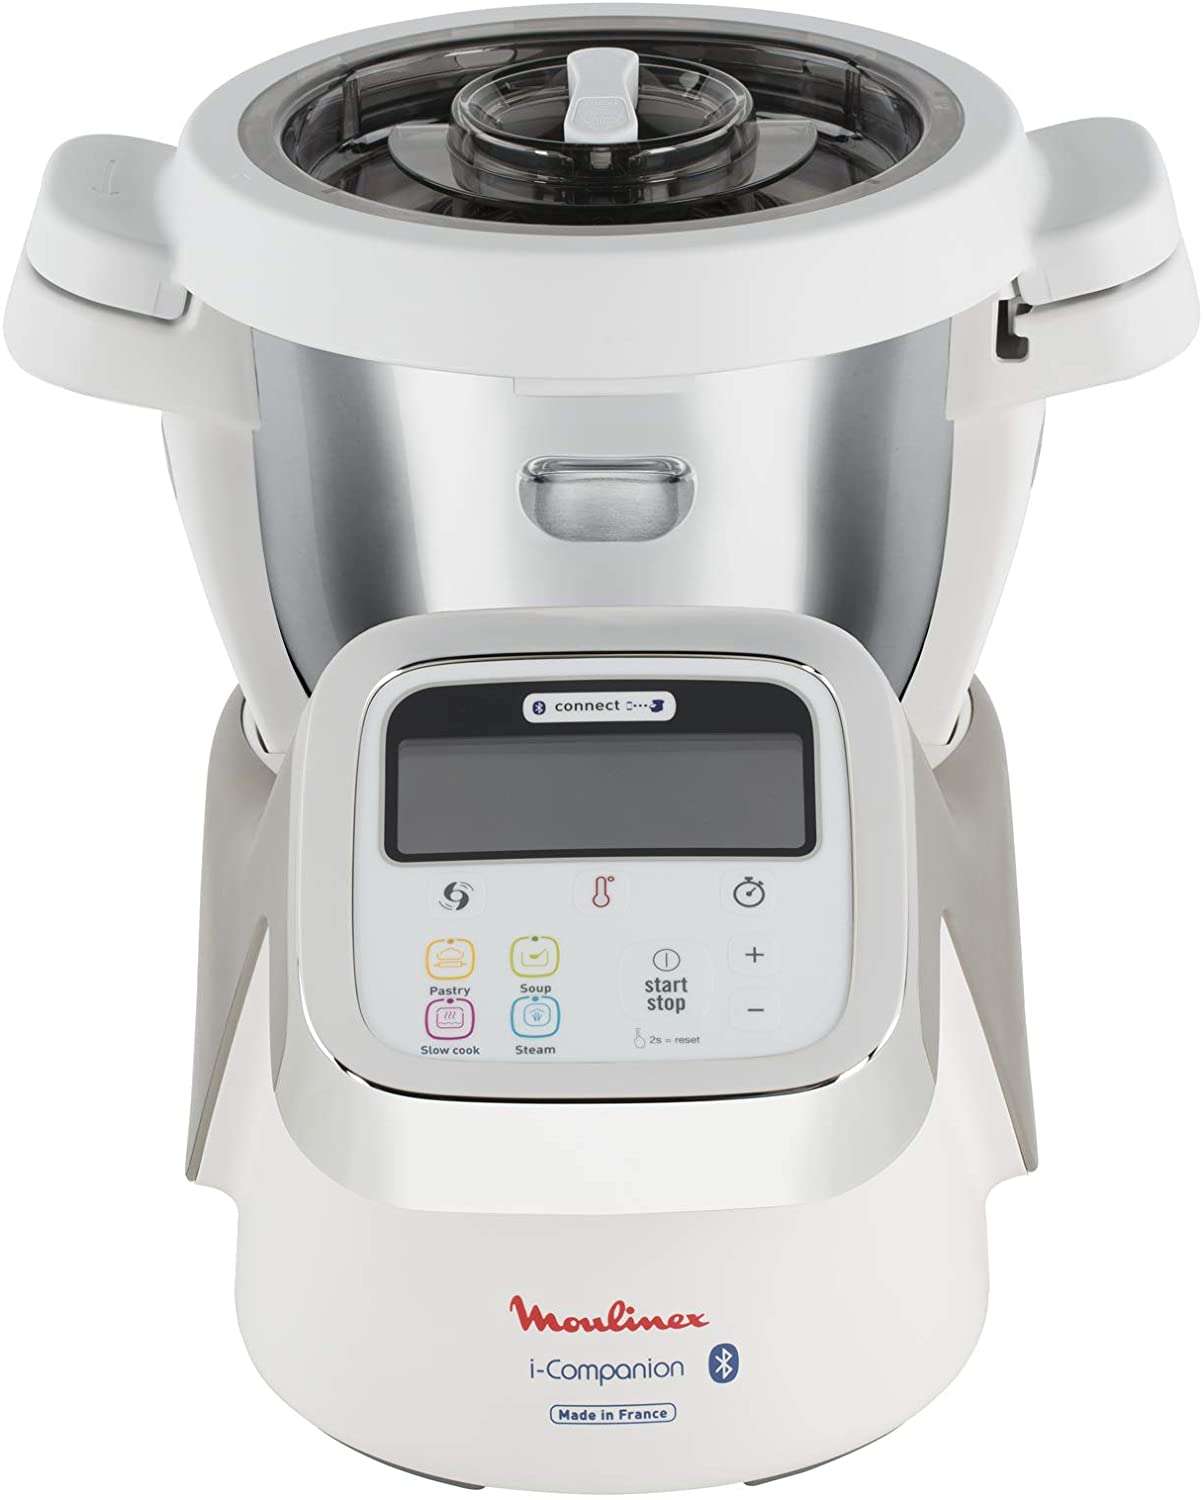 Soldes Moulinex : le robot cuiseur connecté i-Companion © Amazon